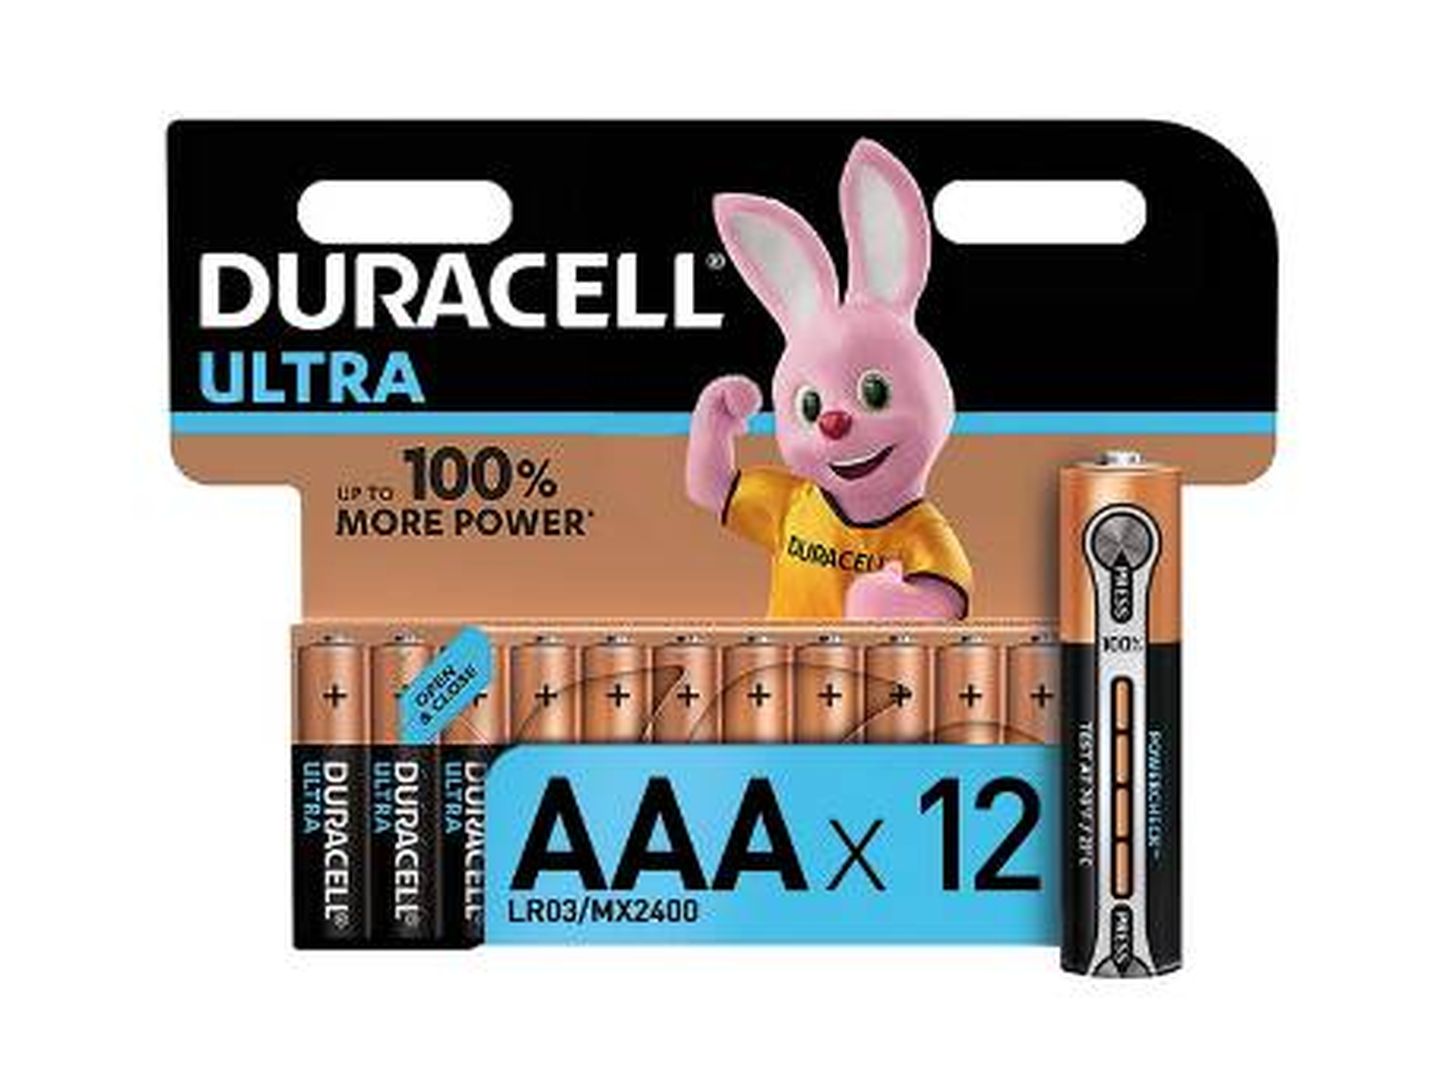 Duracell-Ultra AAA con Powerchek, pilas alcalinas (paquete de 12).